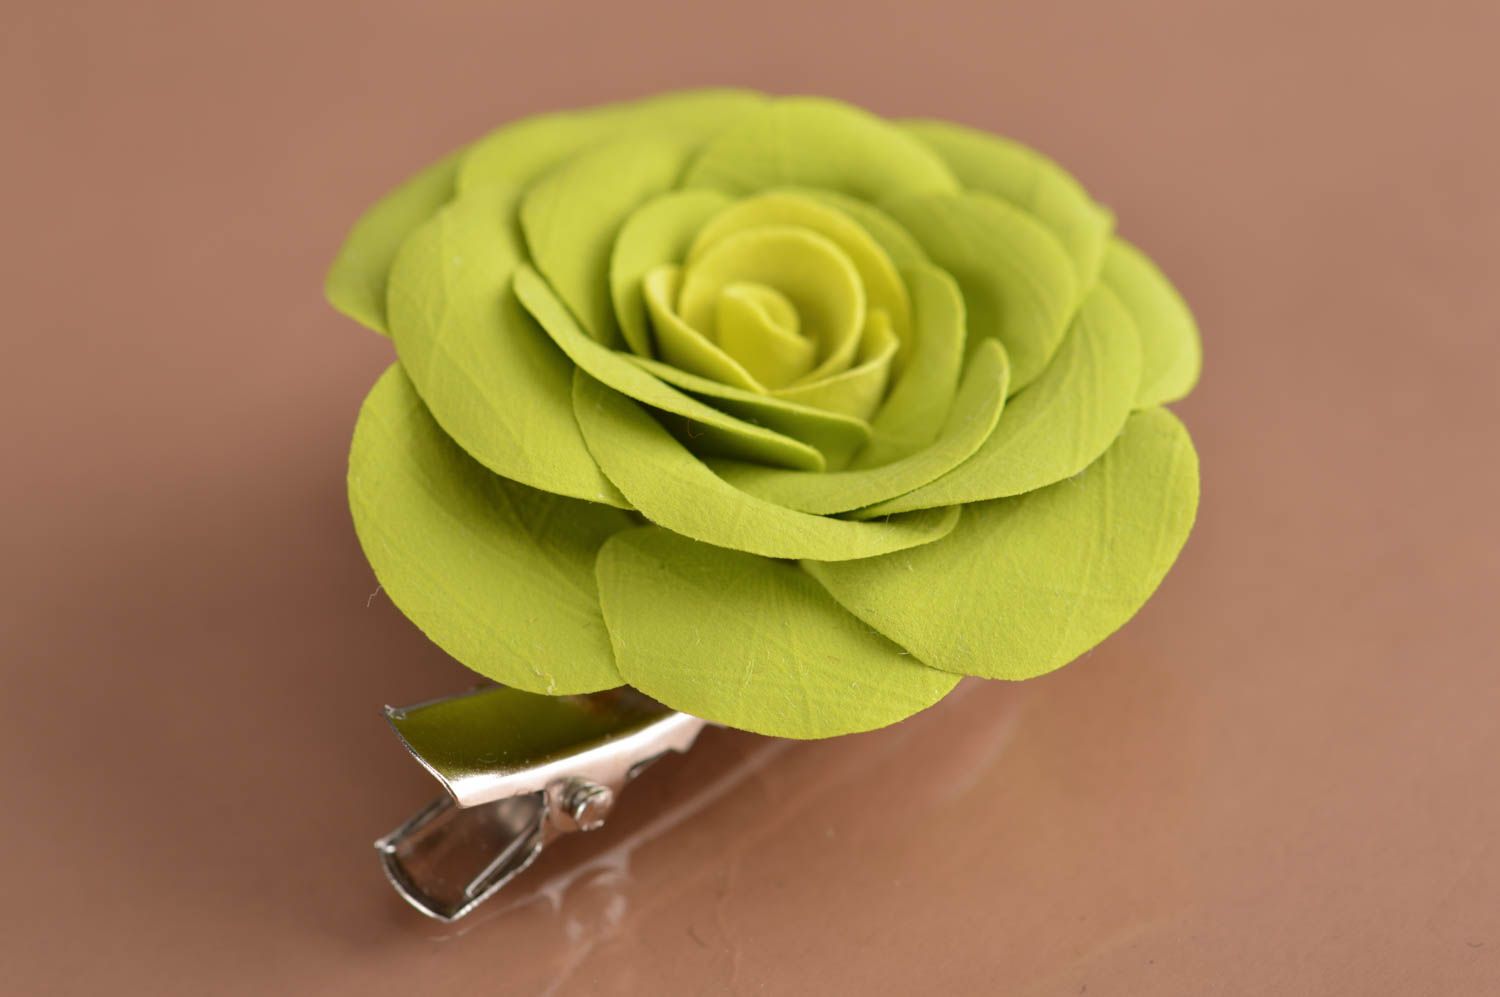 Заколка-брошь из полимерной глины в виде пышной объемной салатовой розы хэндмэйд фото 5